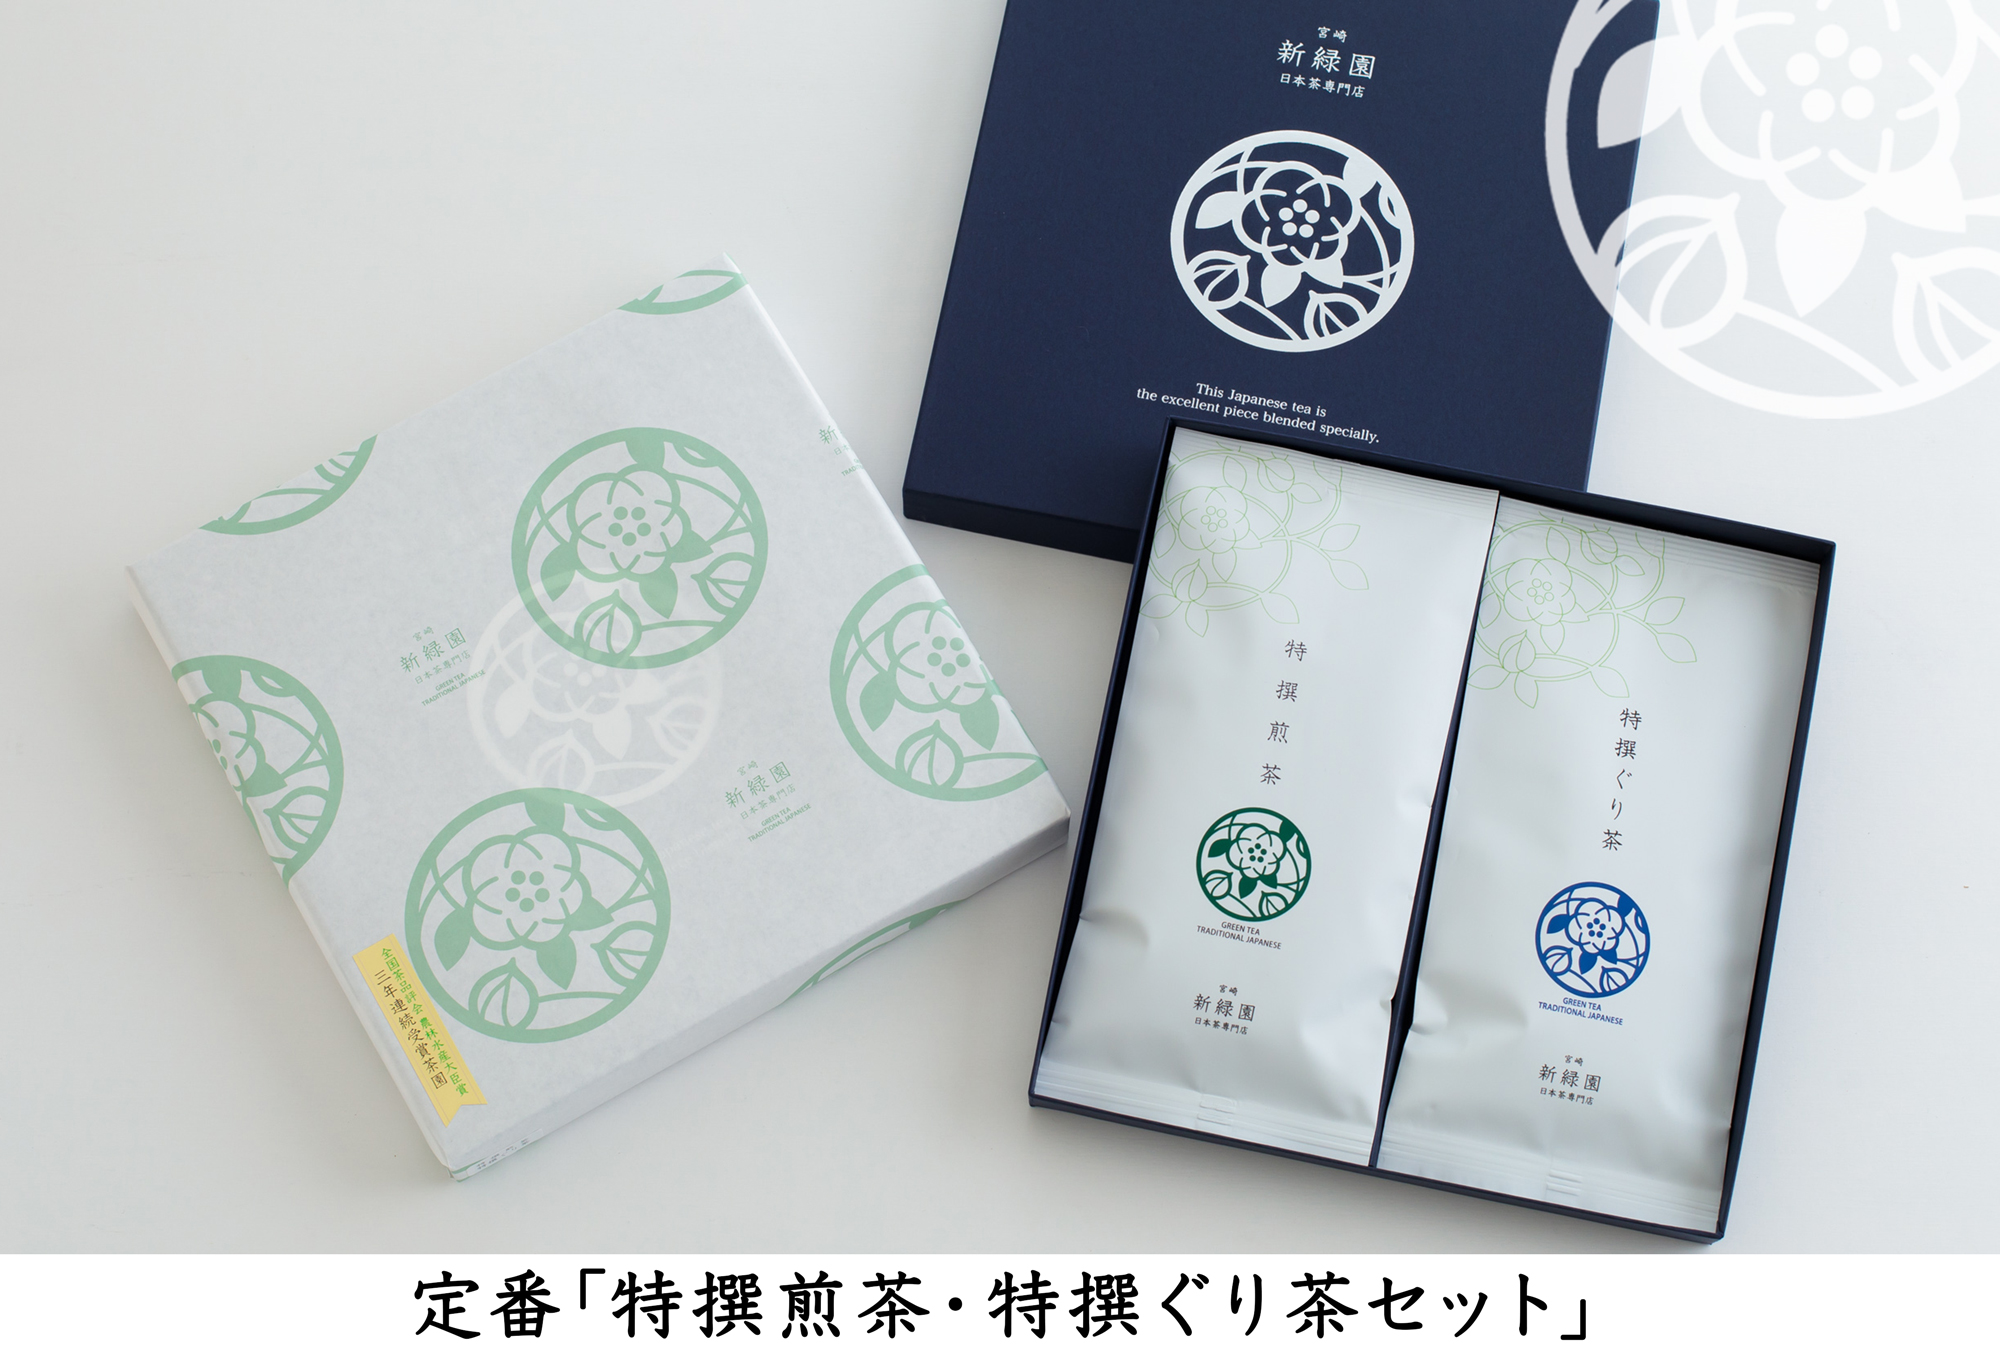 宮崎日本茶専門店 特撰煎茶・特撰ぐり茶のお茶セット【A1】